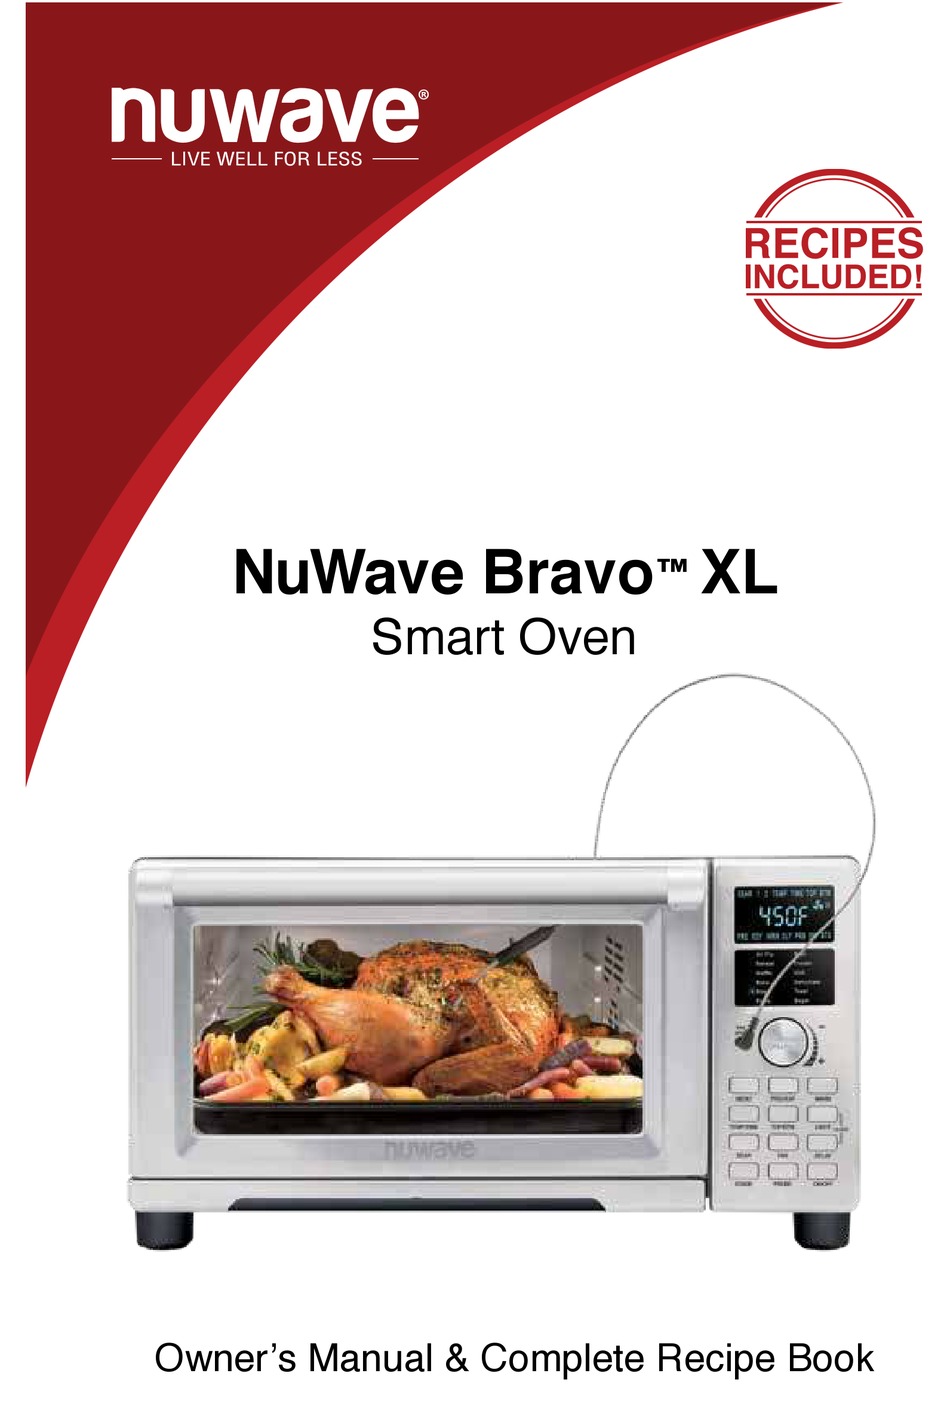 NUWAVE BRAVO XL OWNER'S MANUAL Pdf Download | ManualsLib